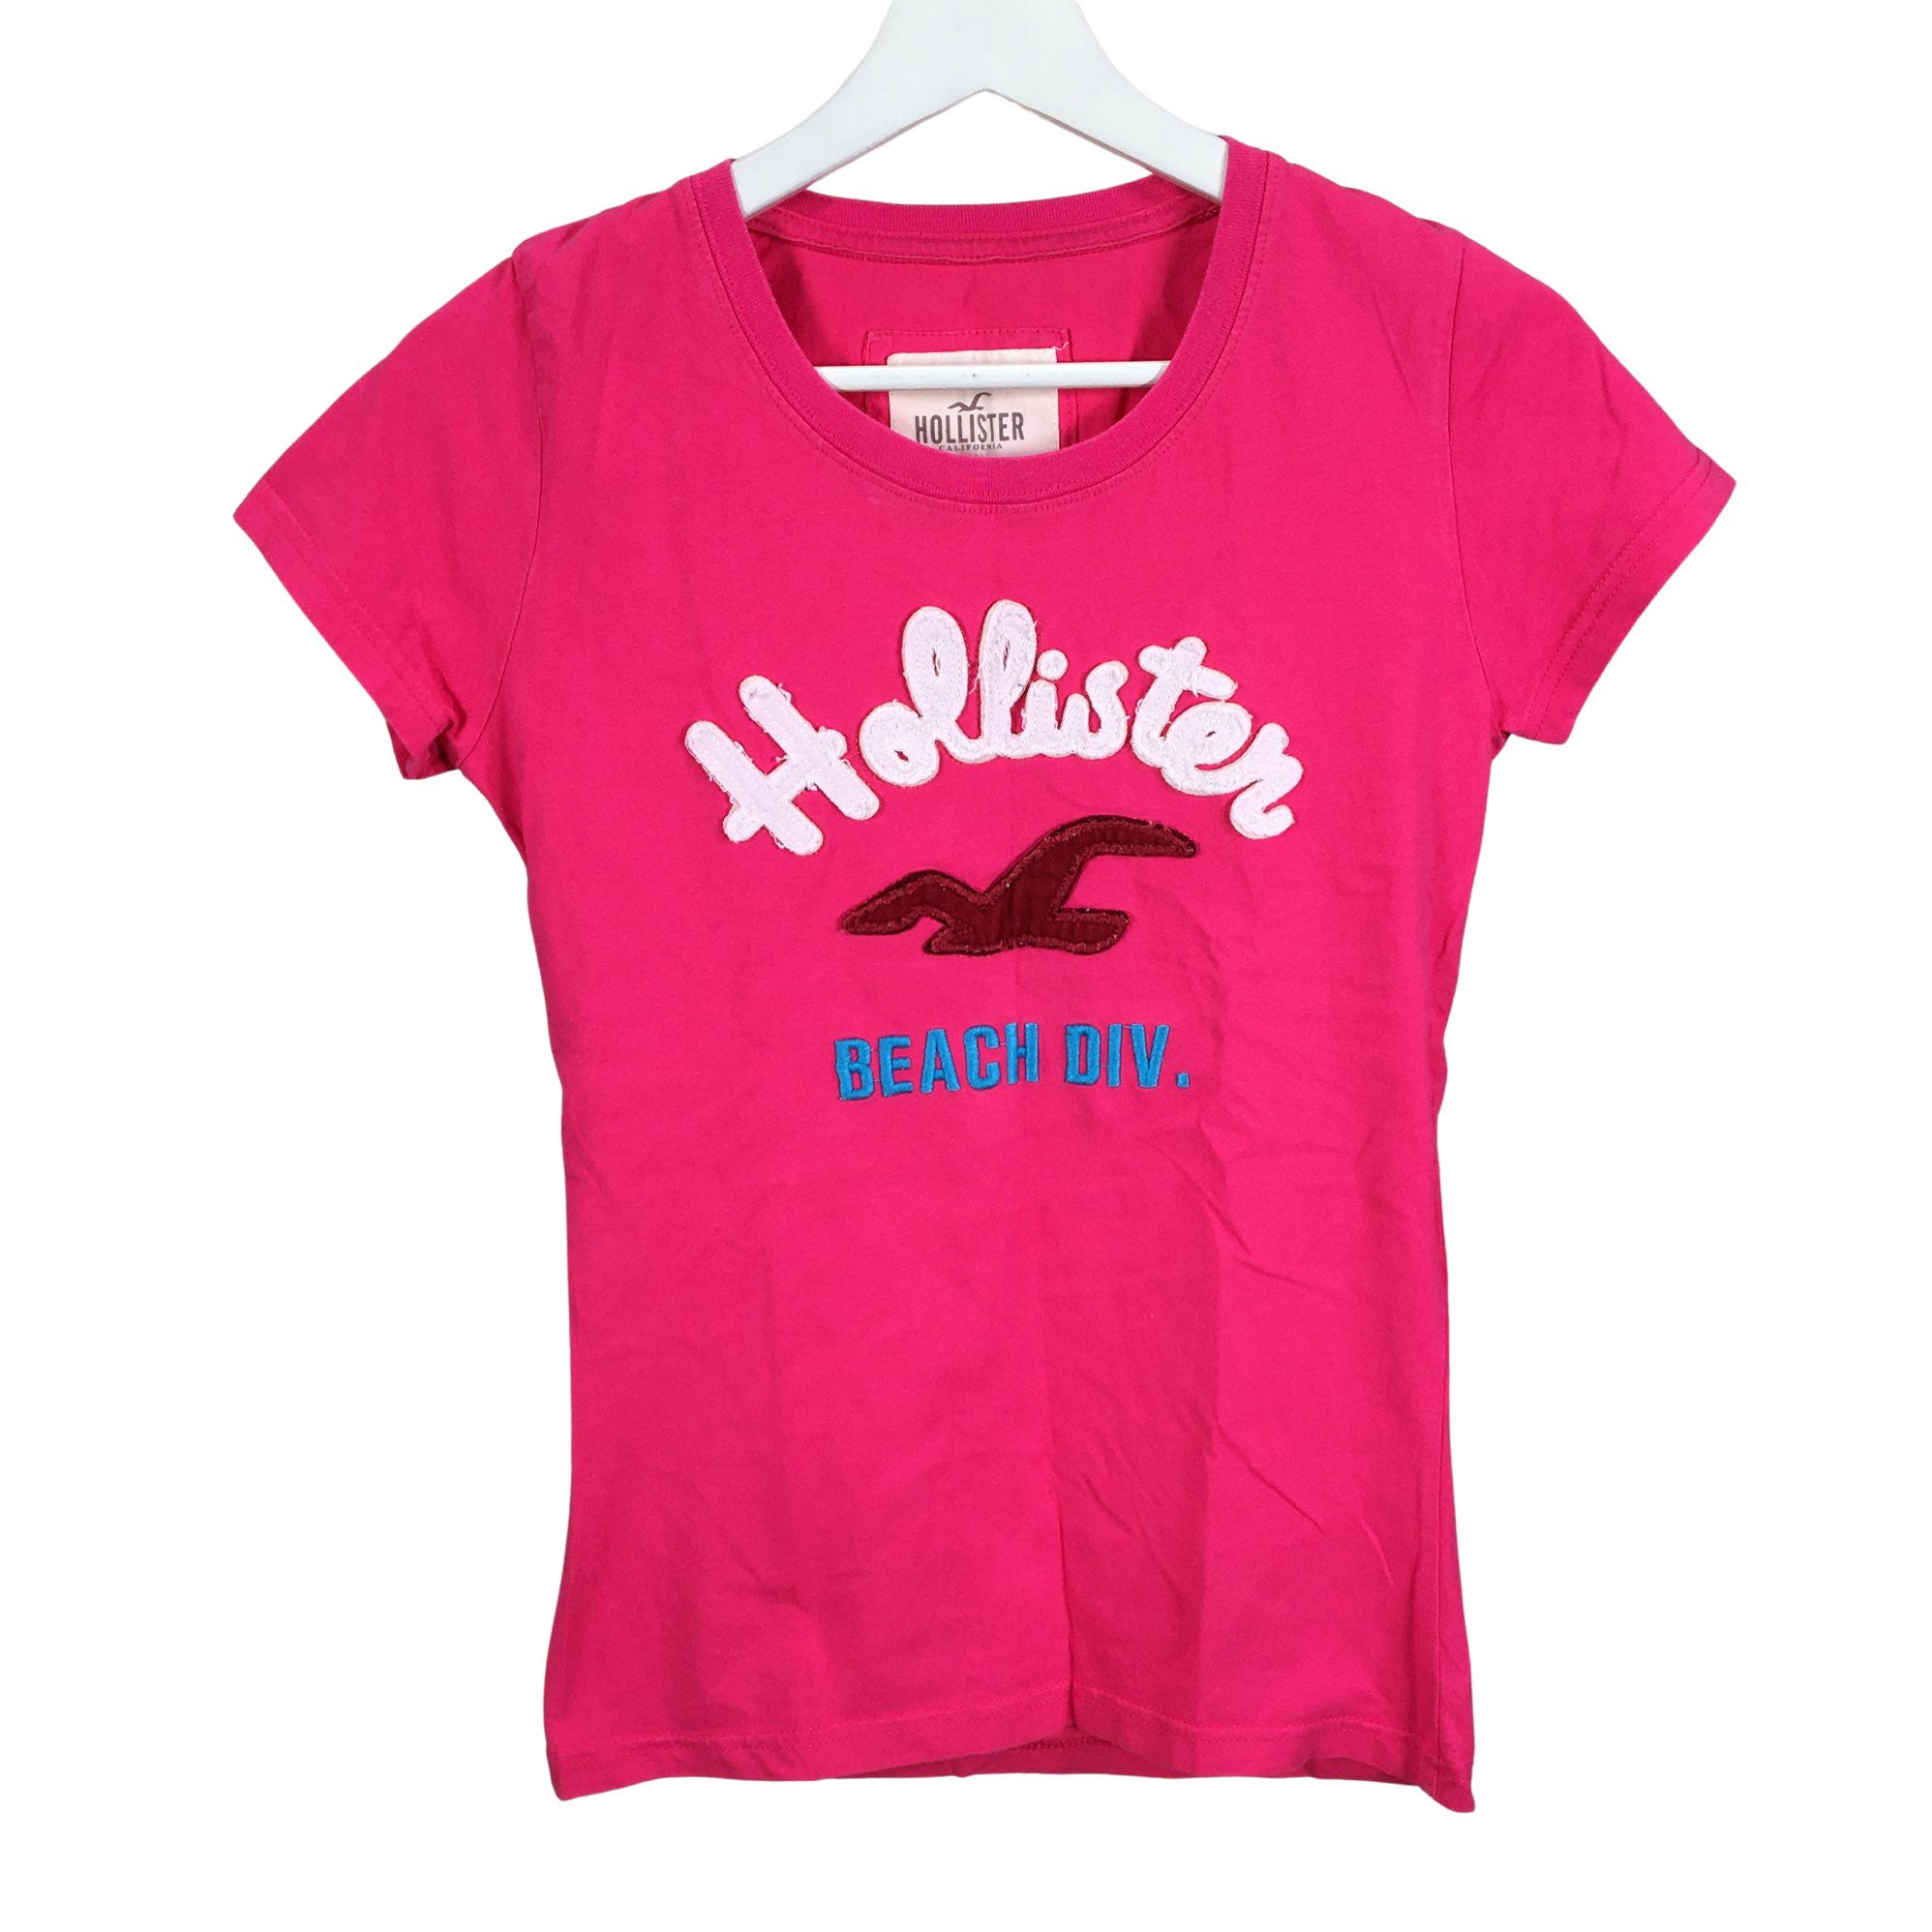 Girls' Hollister T-shirt, size 152 - 158 (Pink)